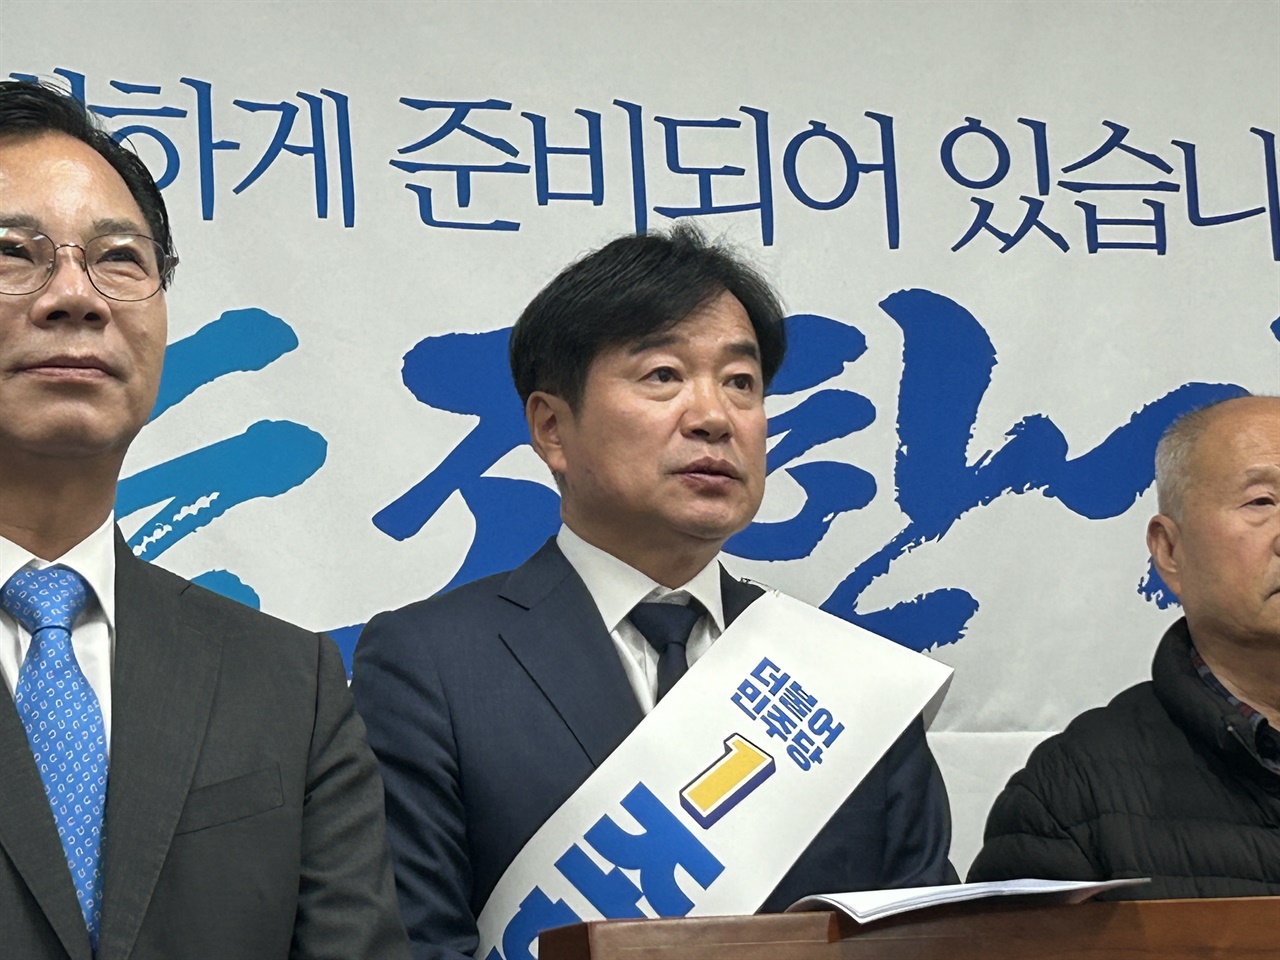 조한기 민주당 서산태안지역위원장이 예비후보 등록일인 12일 22대 총선 서산·태안 선거구 출마를 공식 선언했다.